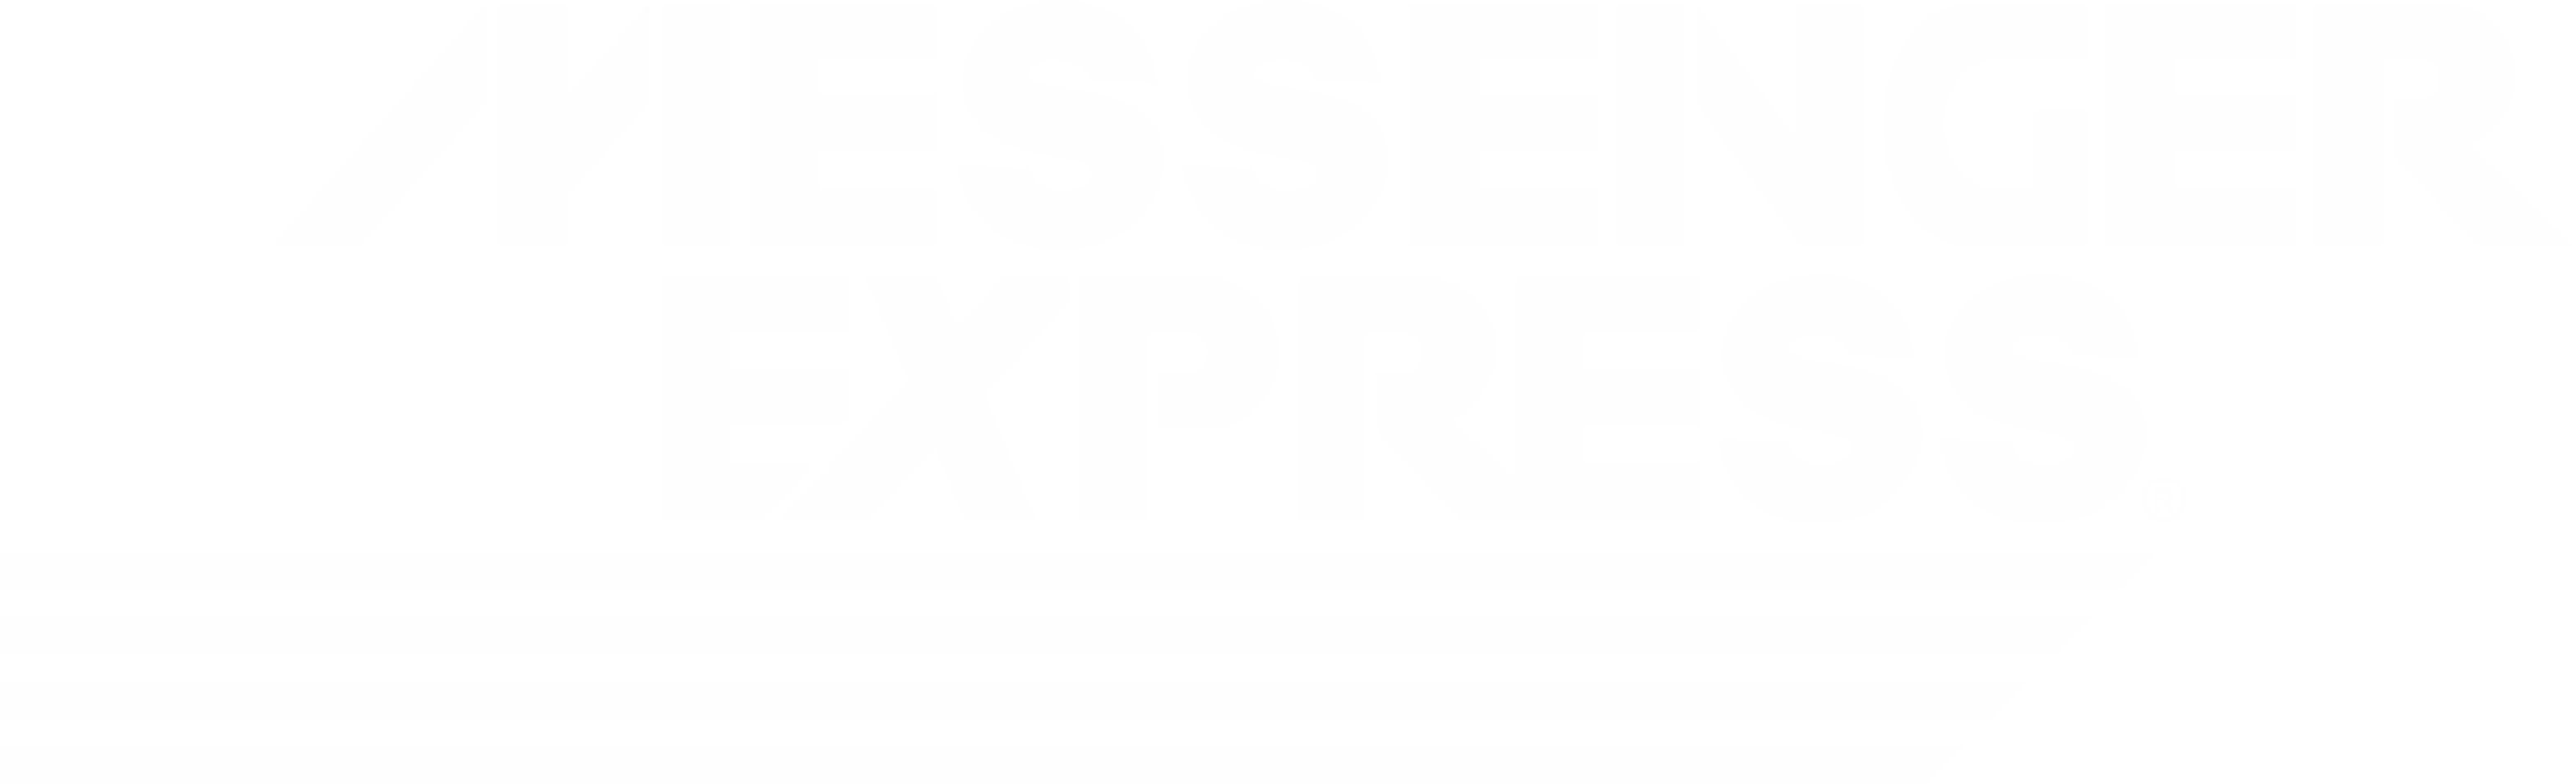 Messenger Express